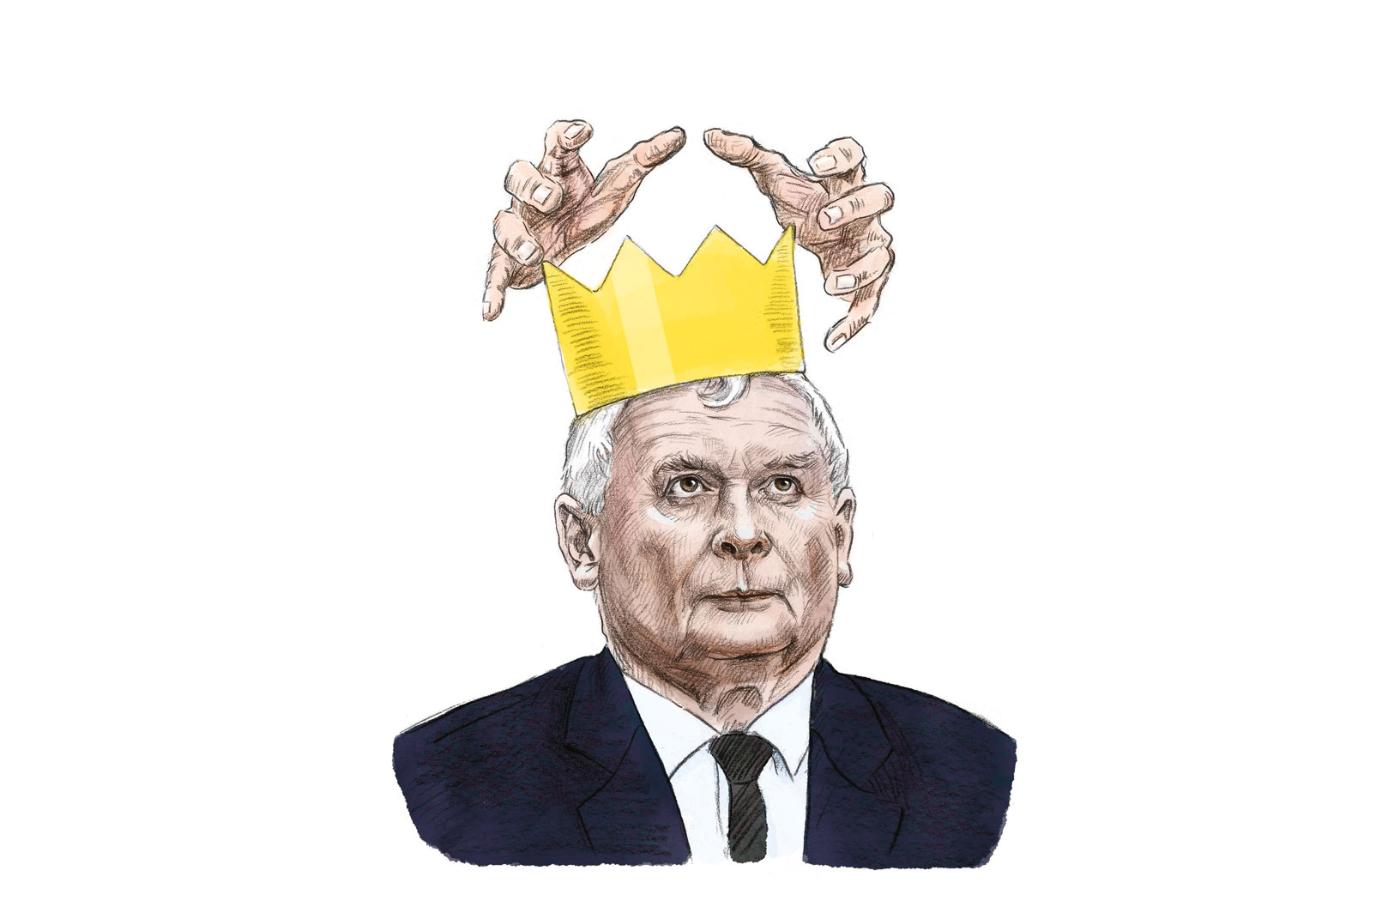 Trzeba przyznać, że Kaczyński potrafi niezwykle elastycznie lawirować między dogmatycznym tradycjonalizmem a dyskursem modernizacyjnym uwzględniającym konieczność zmian.